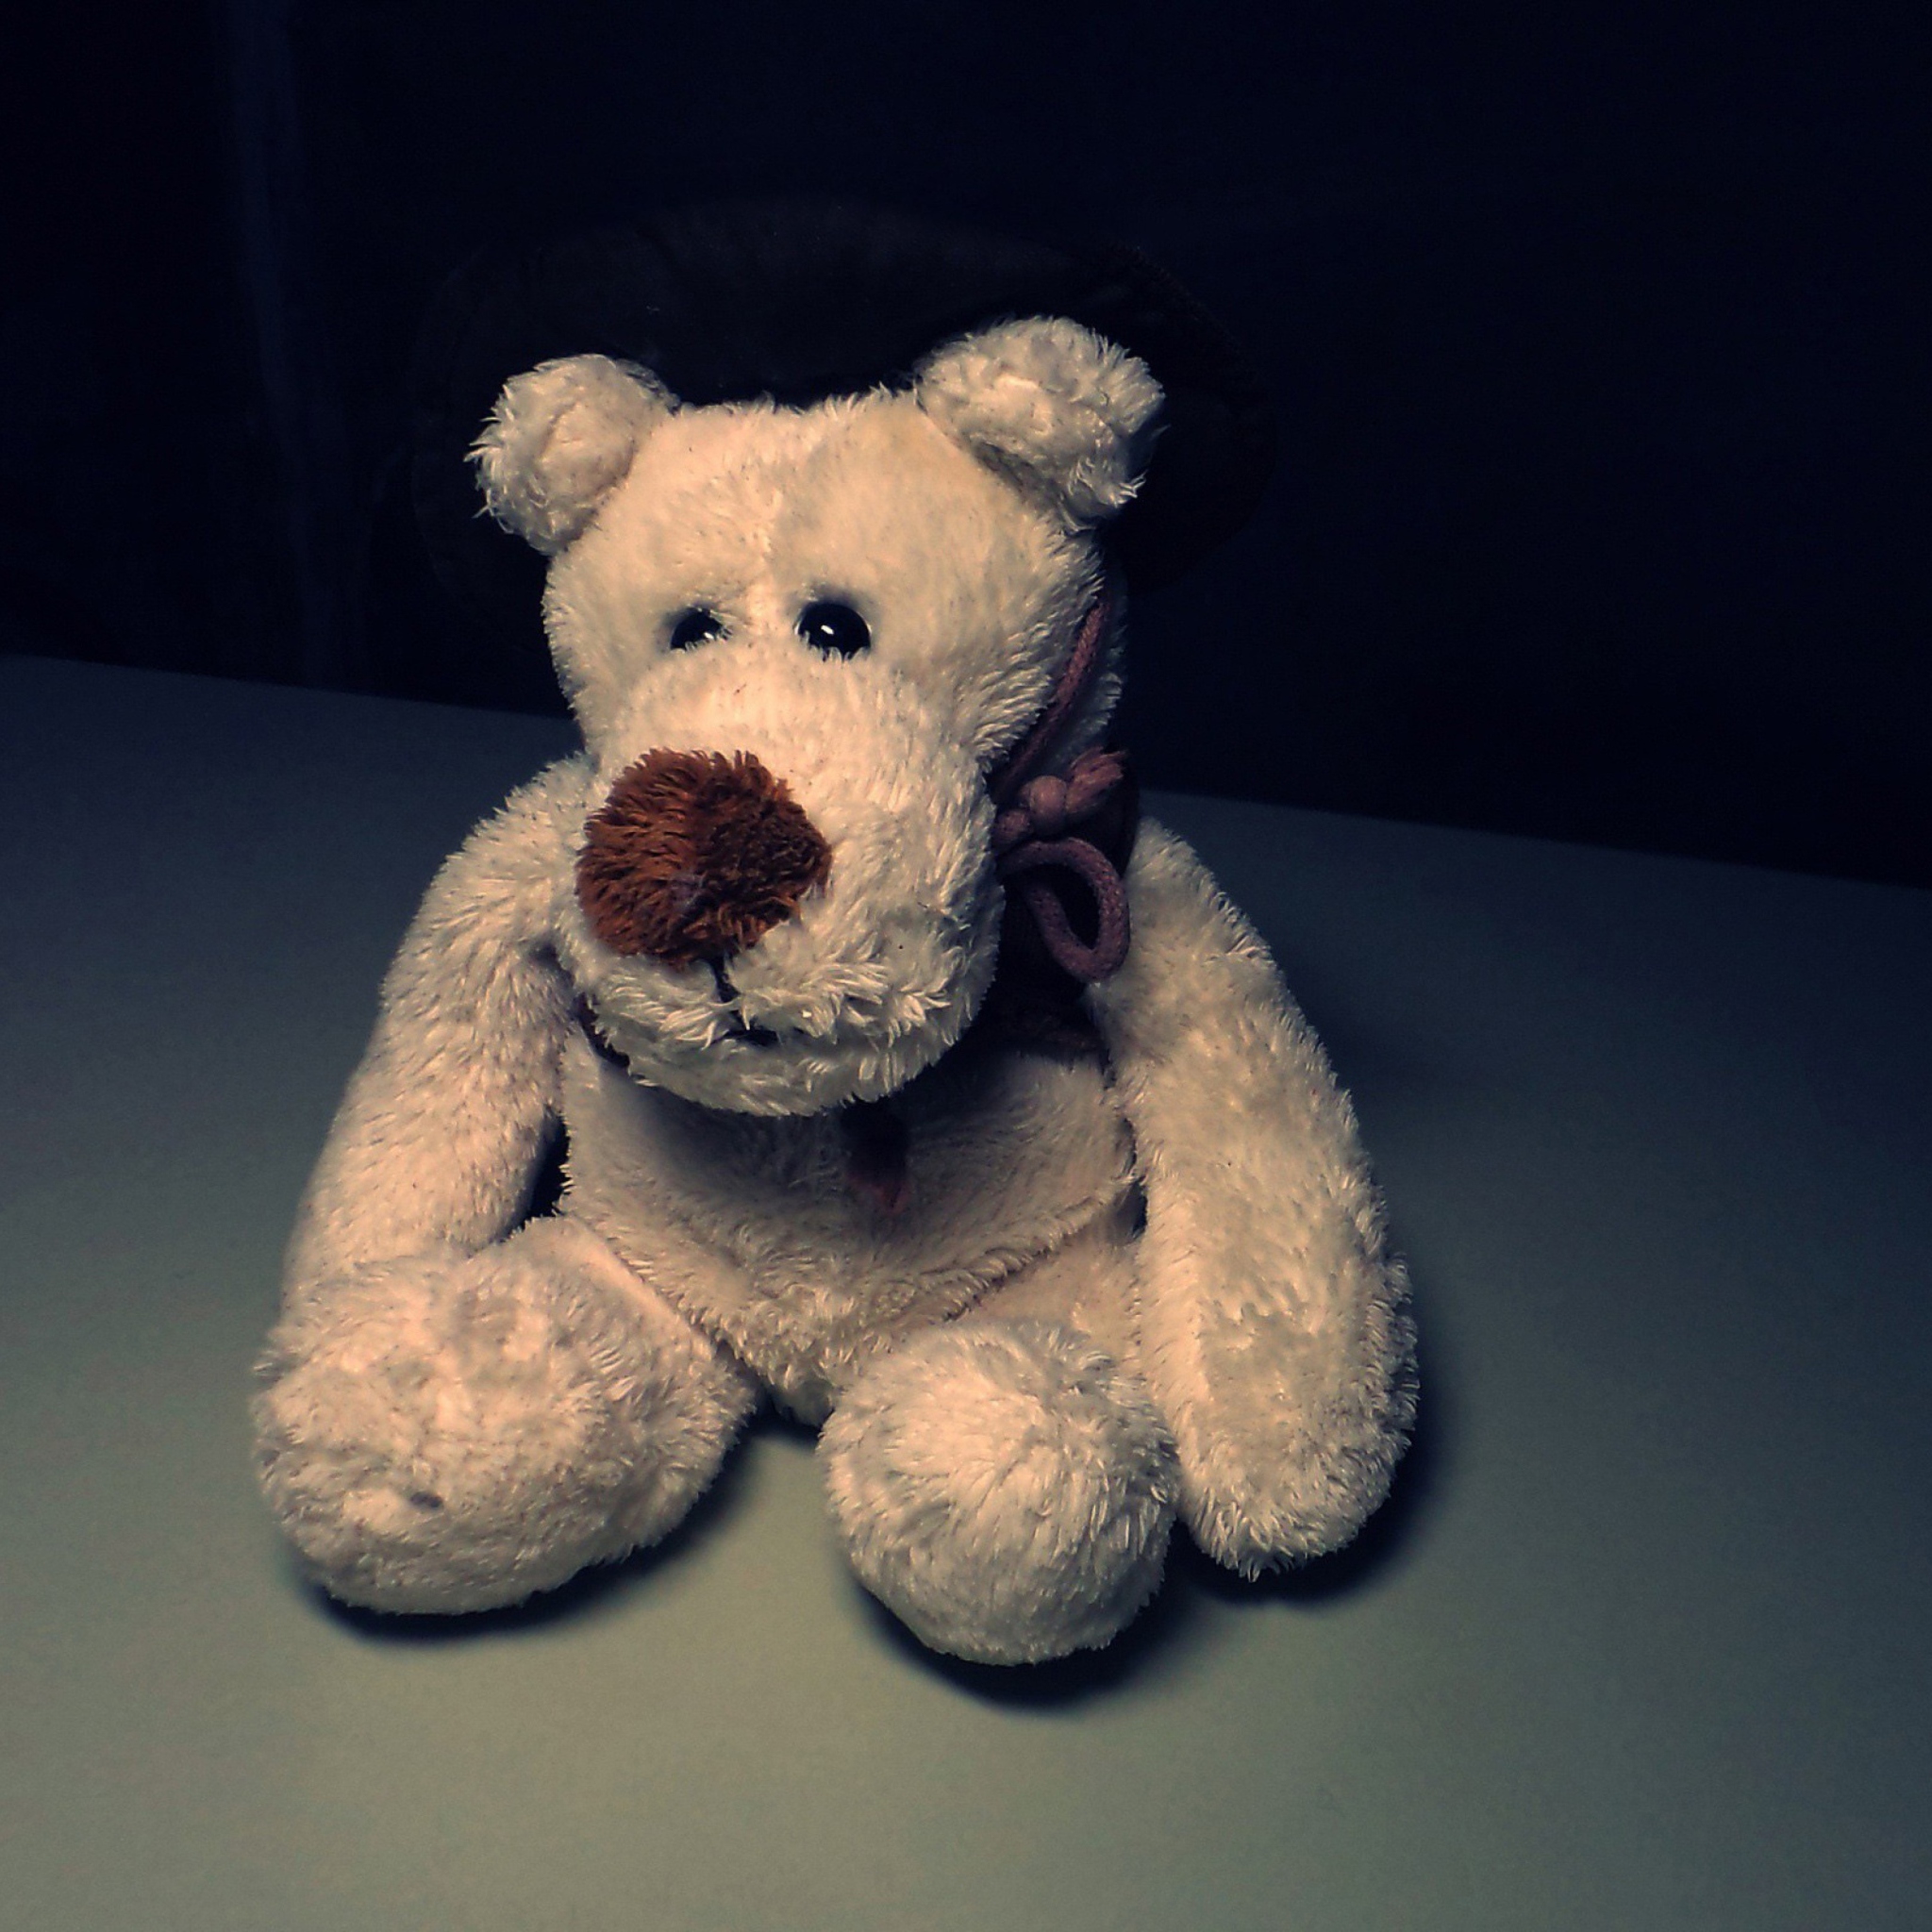 Das Sad Teddy Bear Sitting Alone Wallpaper 2048x2048